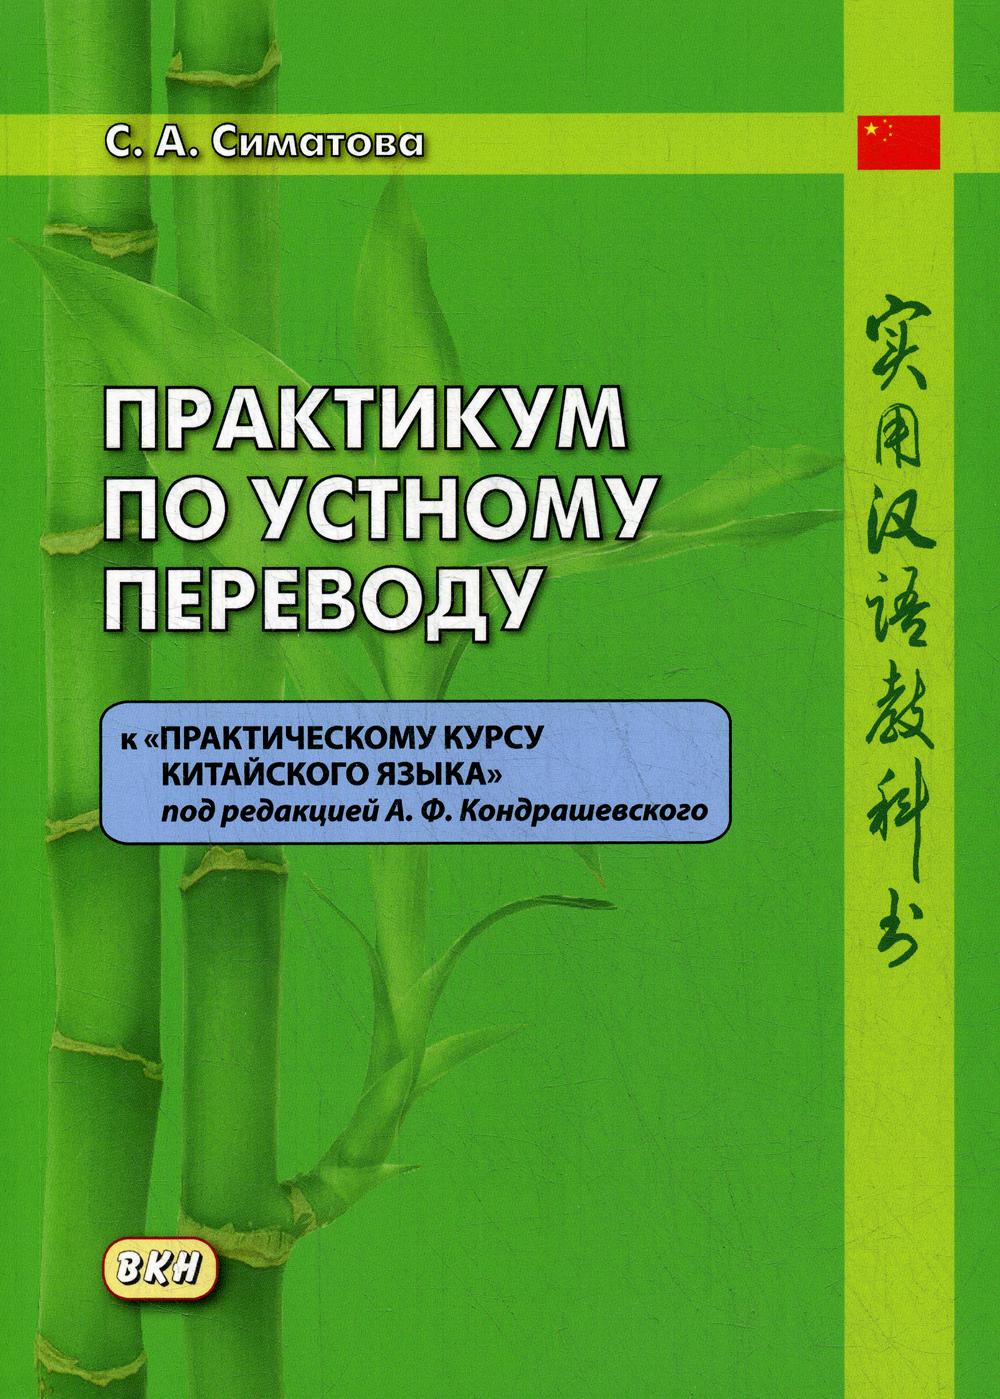 Практикум по устному переводу к «Практическому курсу китайского языка» под редакцией А. Ф. Кондрашевского